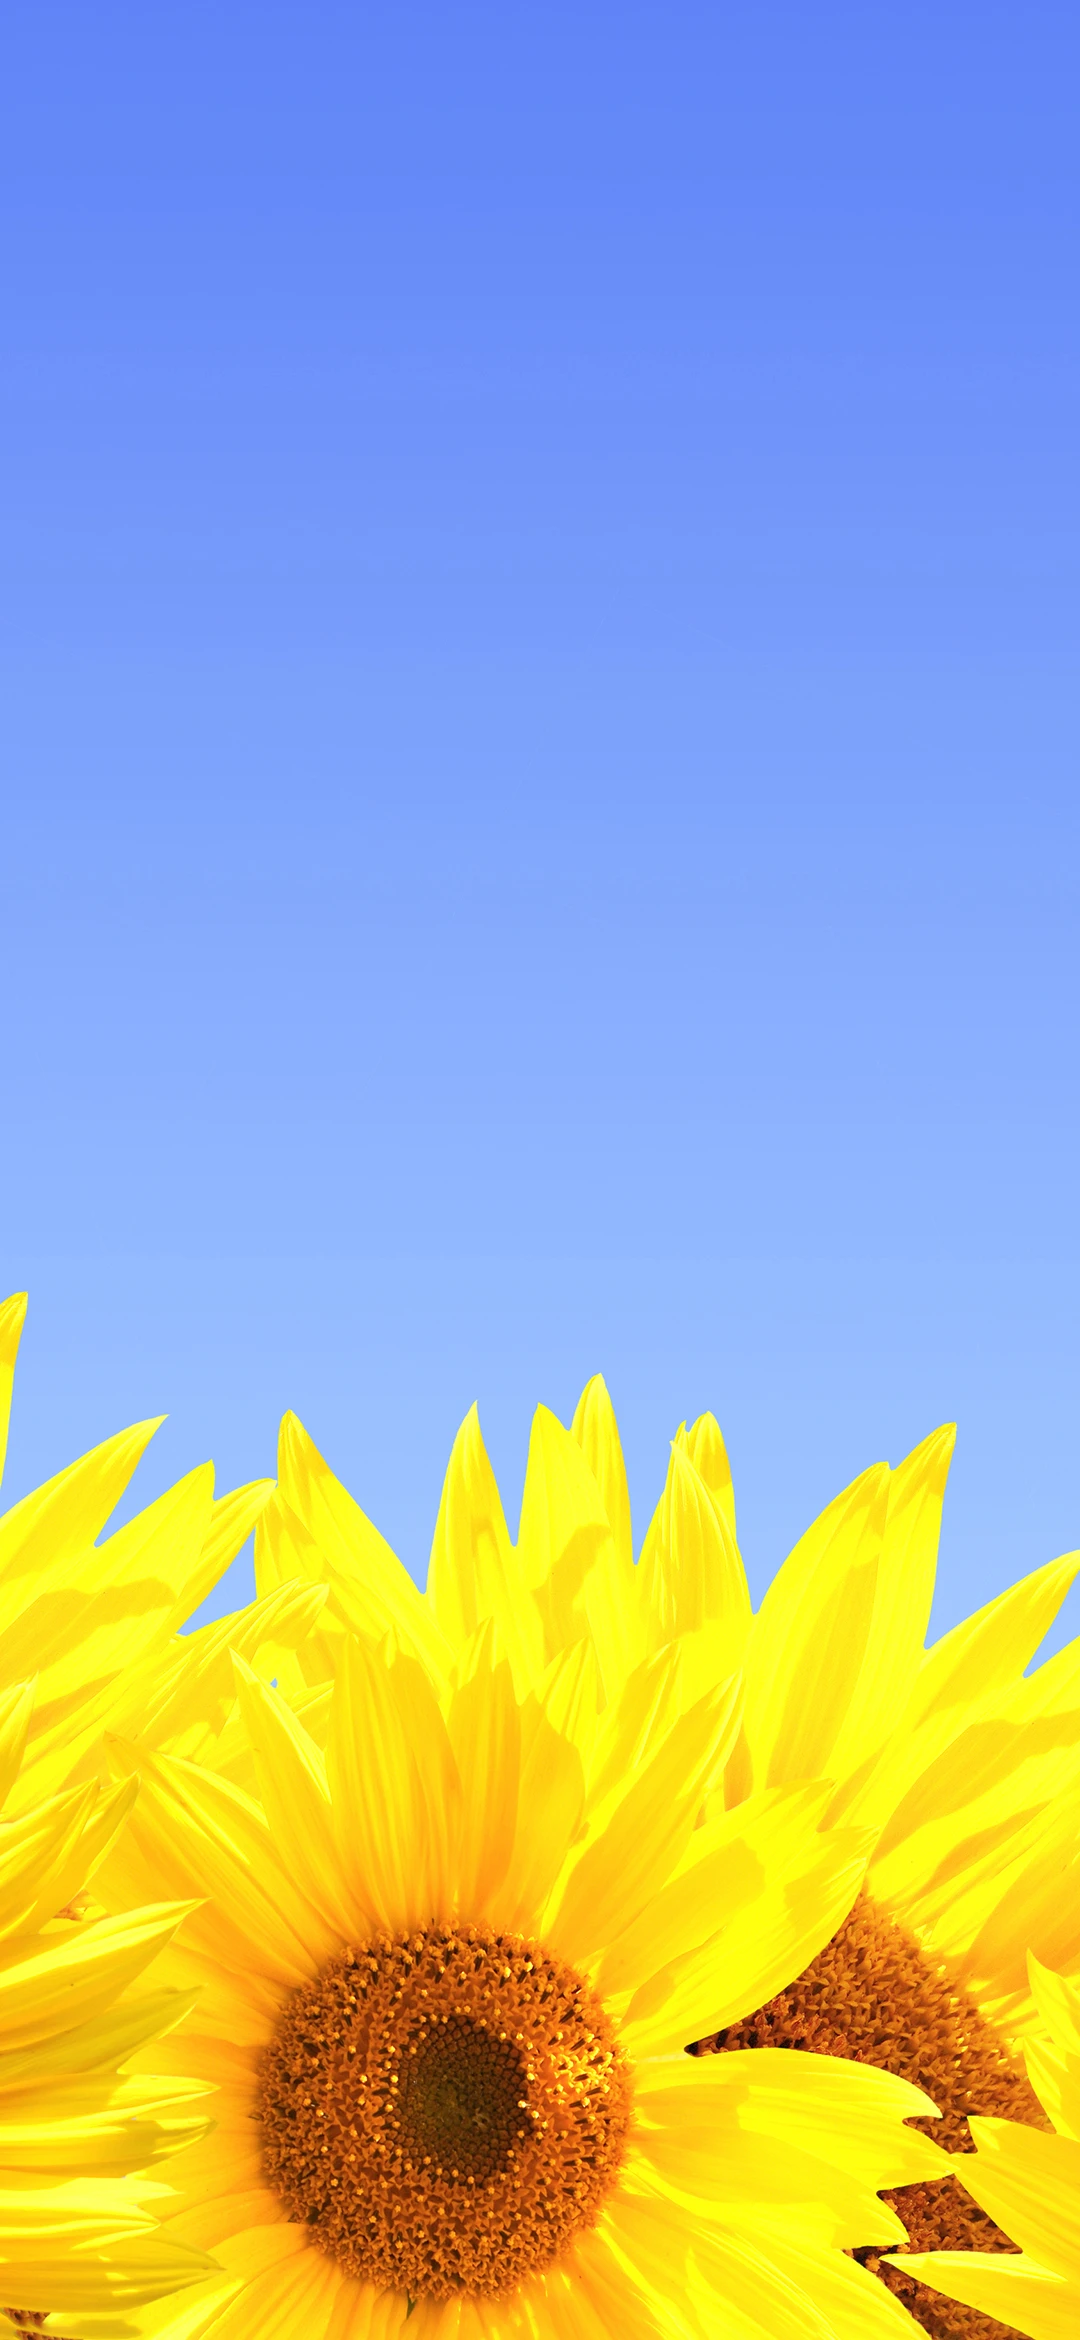 美好向日葵 自愈系创意竖屏手机壁纸 1080×1920-PixStock 源像素